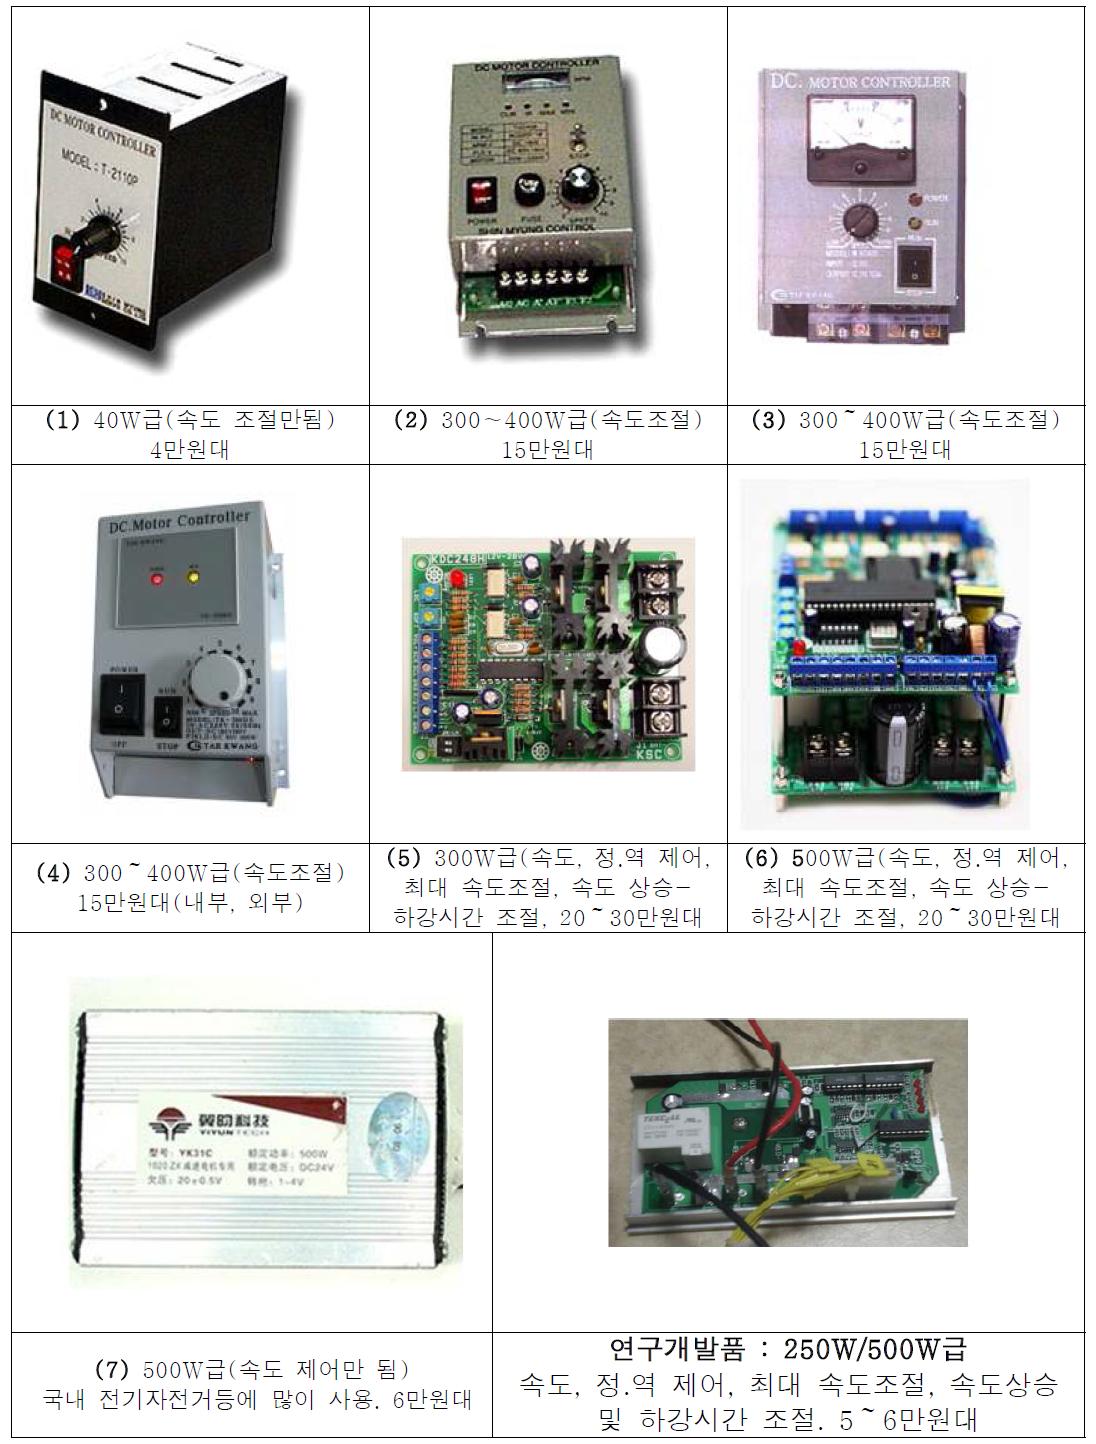 중소형 DC 모터 컨트롤러 제품과 연구개발 시제품의 성능 대 가격